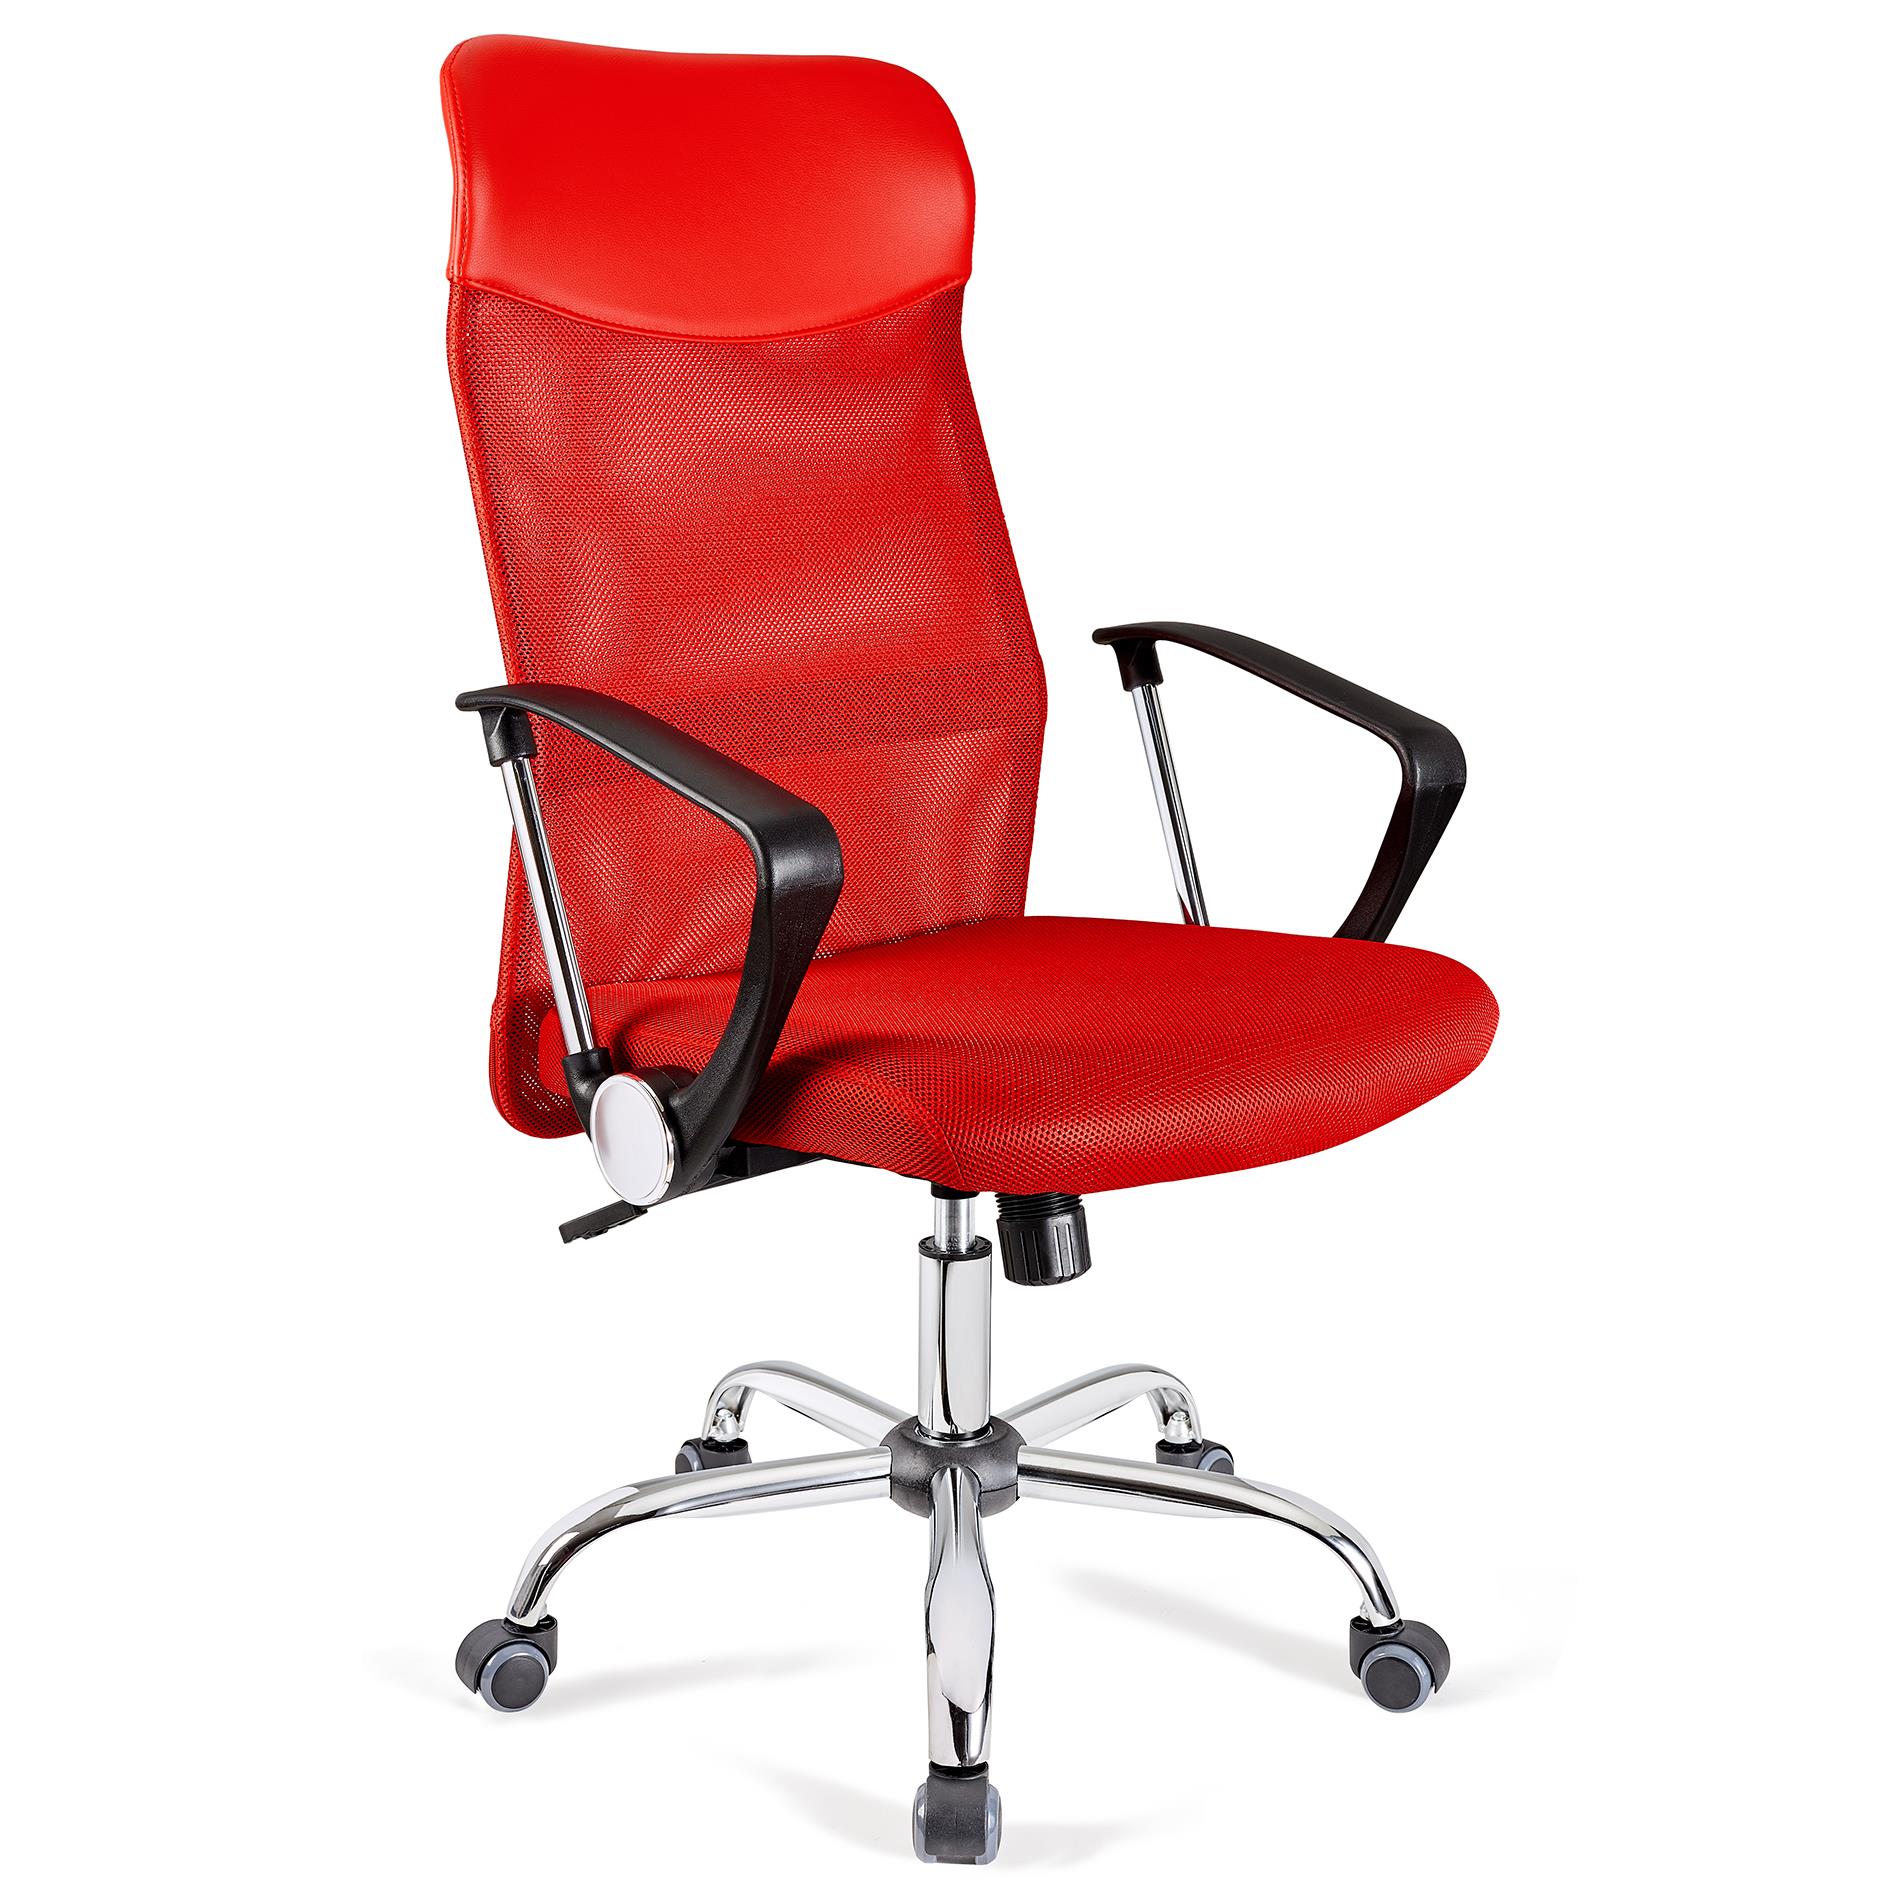 Cadeira de Escritório ASPEN, Malha Respirável, Assento Acolchoado e Preço Incrível, Cor Vermelho